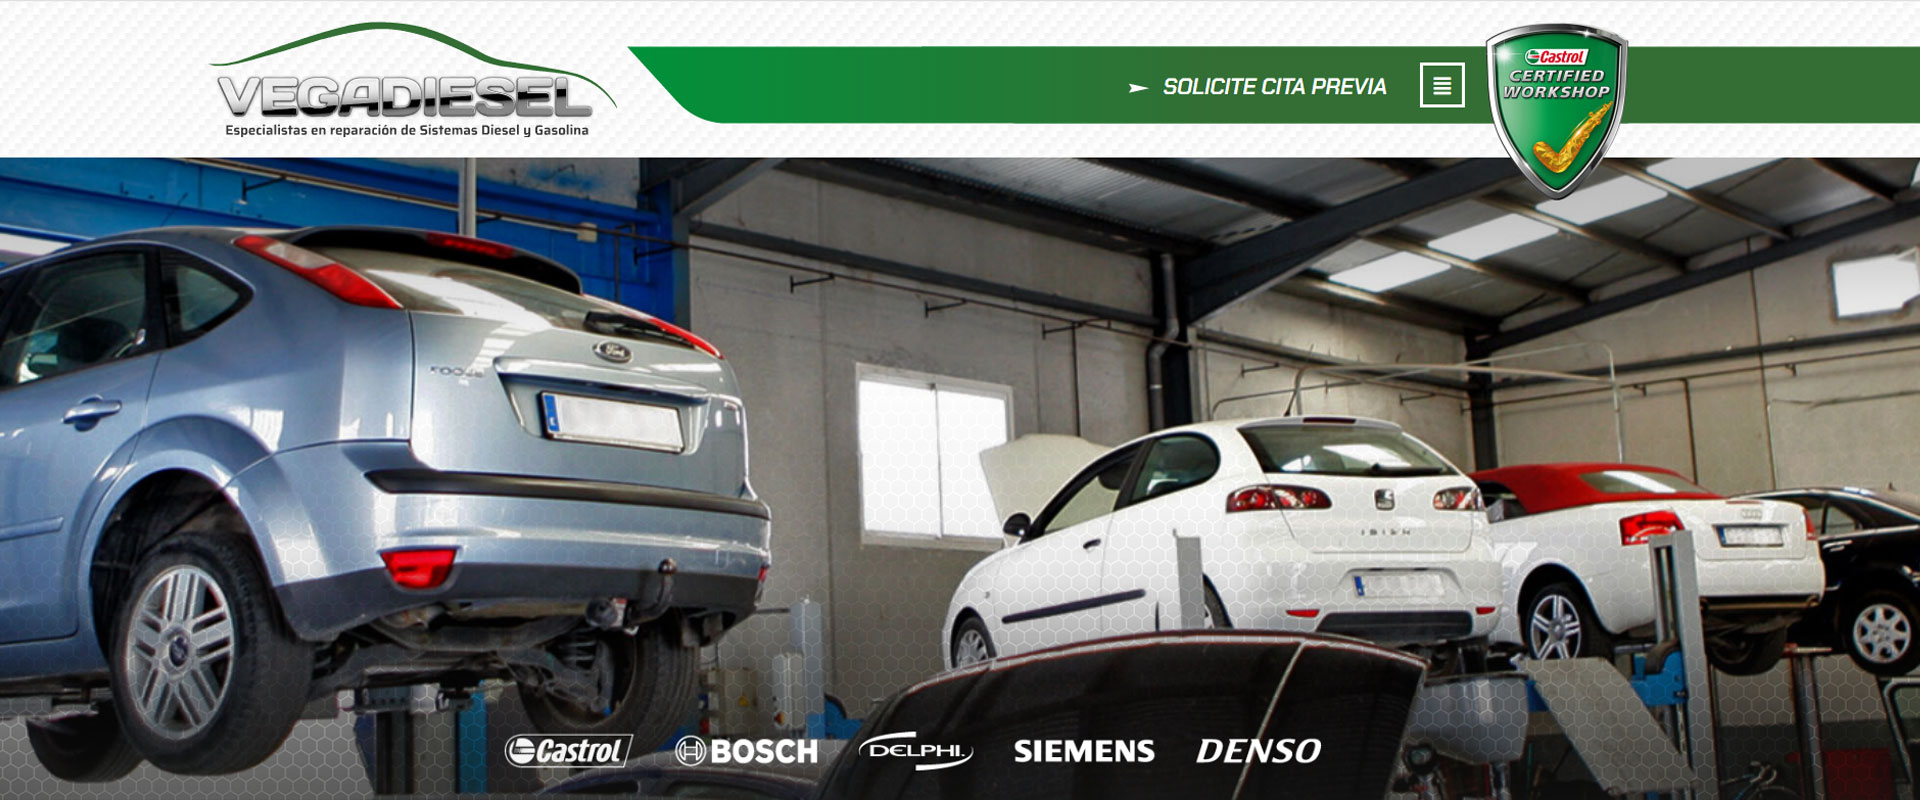 Web para talleres de reparación y mantenimiento de vehículos.
.